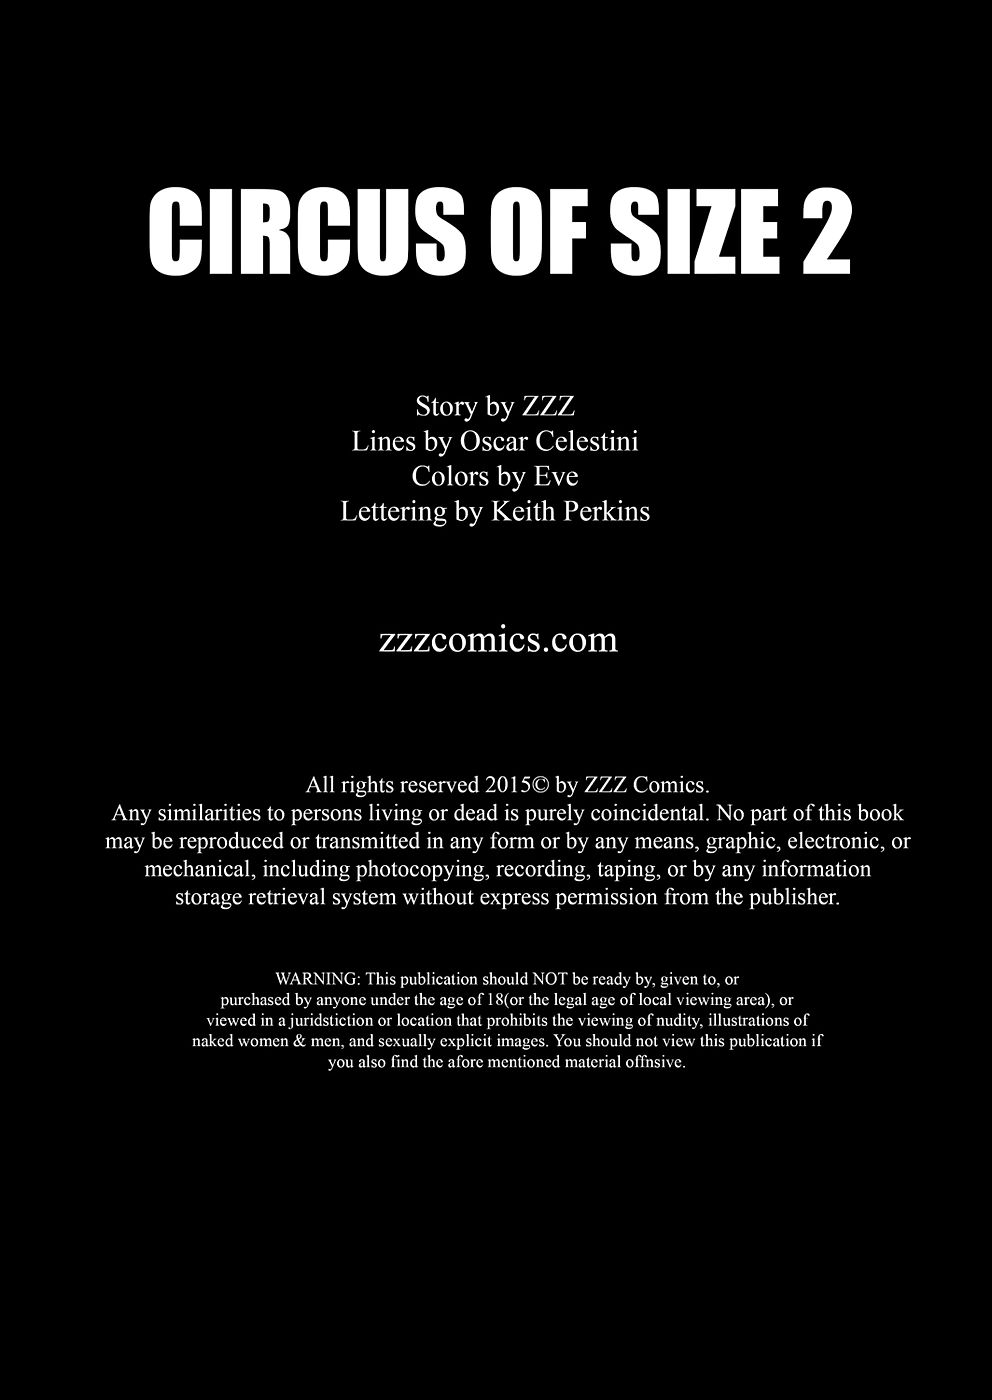 ззз цирк из Размер 2 page 1